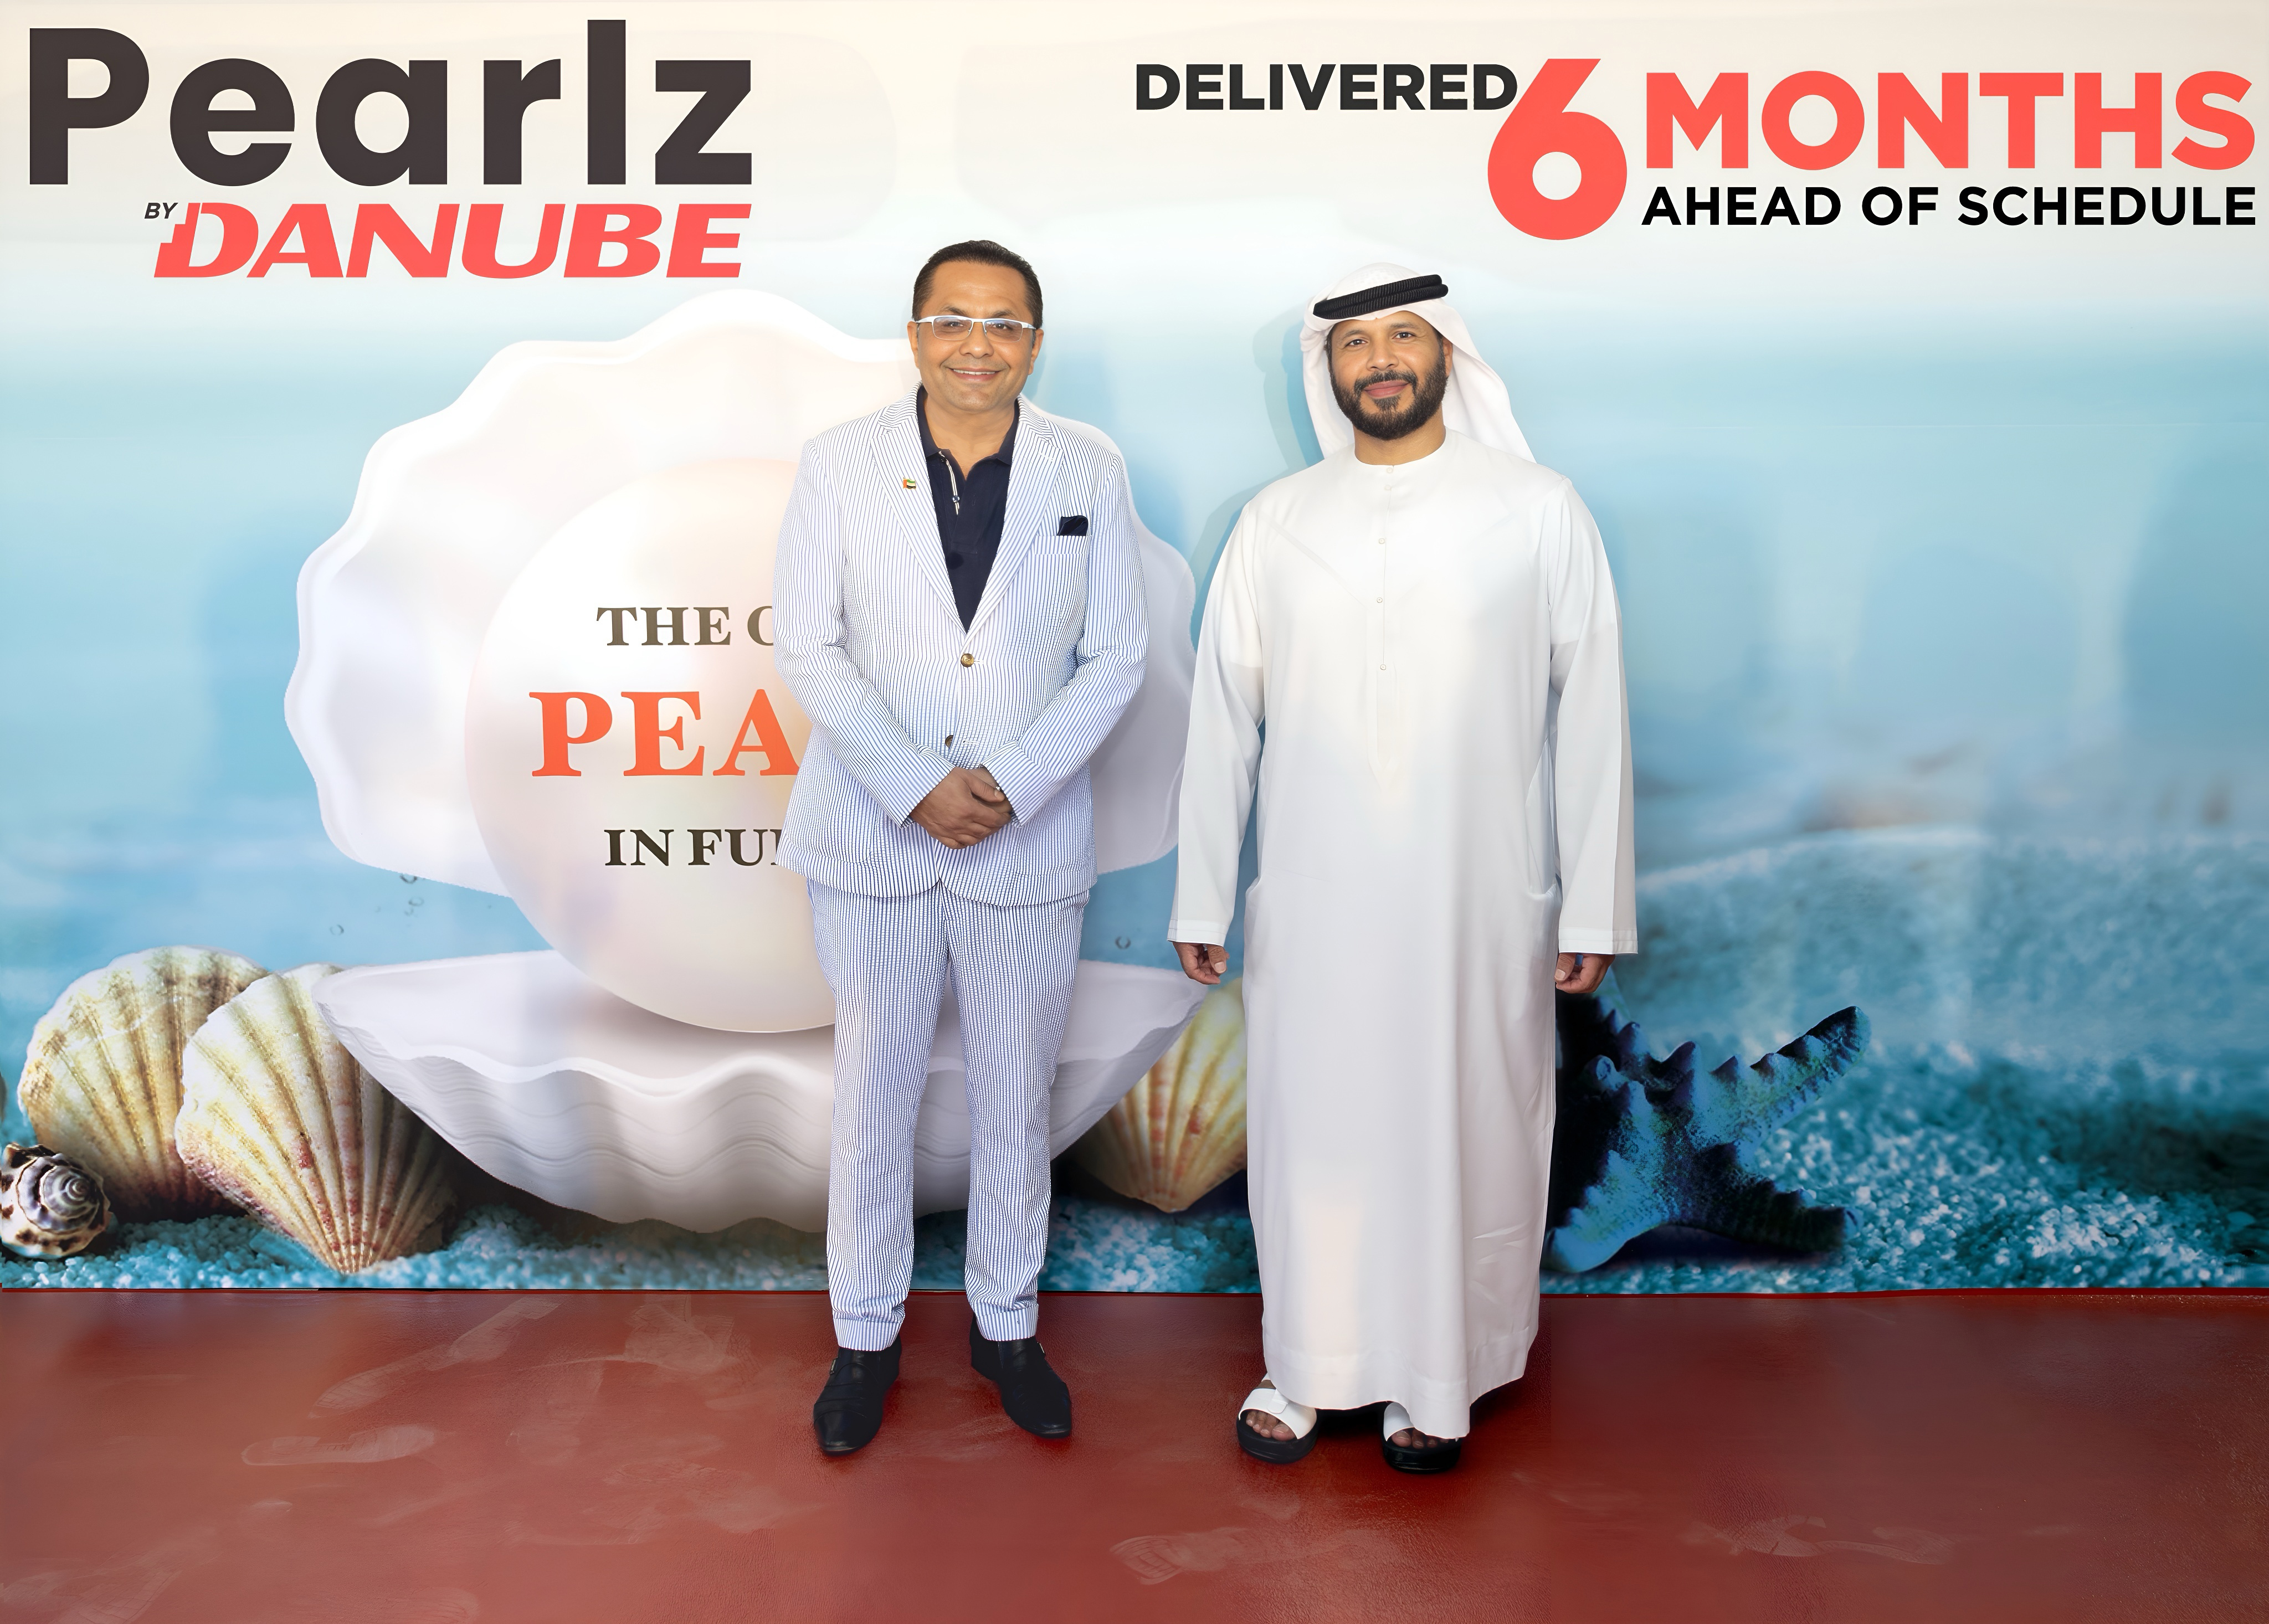 UAE’s Danube Properties Hands Over Pearlz Project Ahead Of Schedule